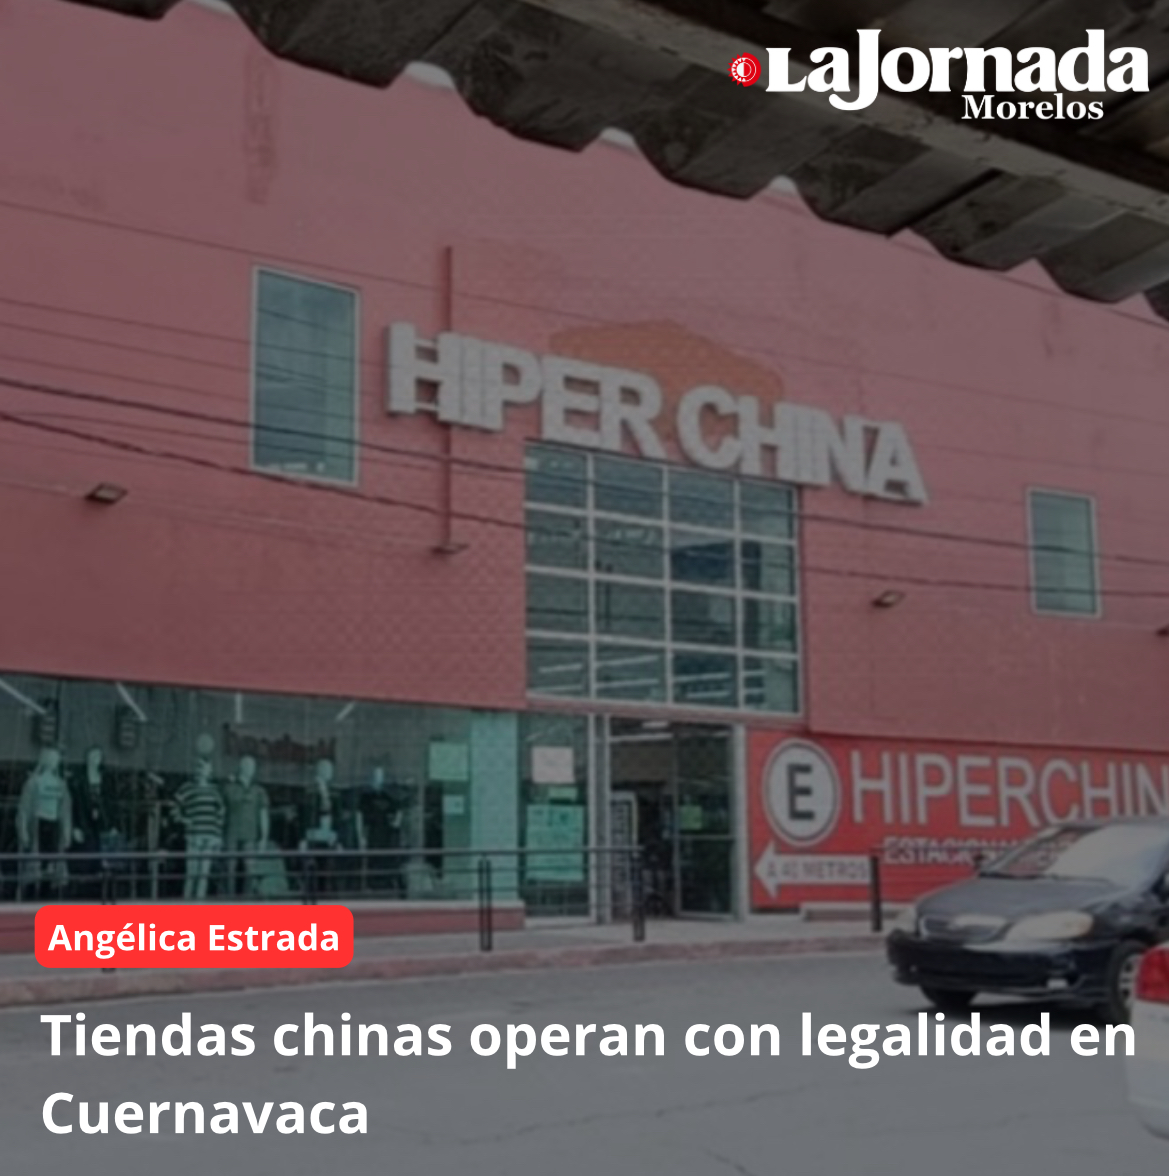 Tiendas chinas operan con legalidad en Cuernavaca